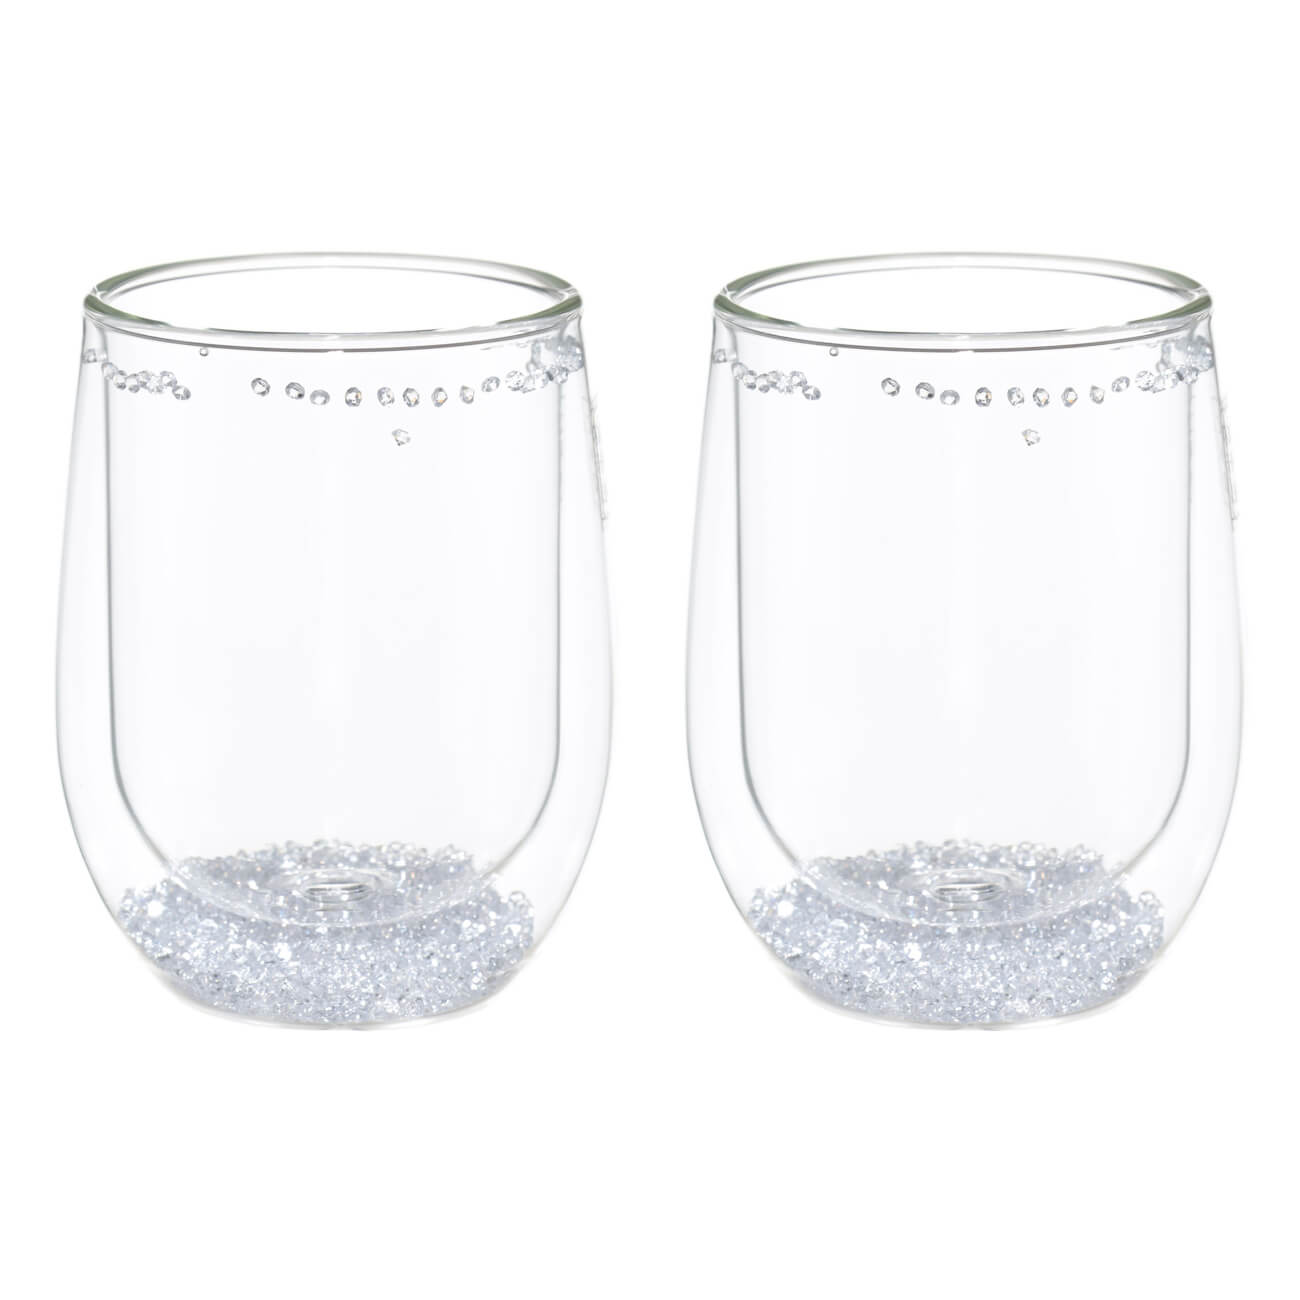 16490 fissman набор sencha из 2 х стаканов с двойными стенками 280мл жаропрочное стекло Стакан, 300 мл, 2 шт, стекло Б, с кристаллами внутри, Air decor